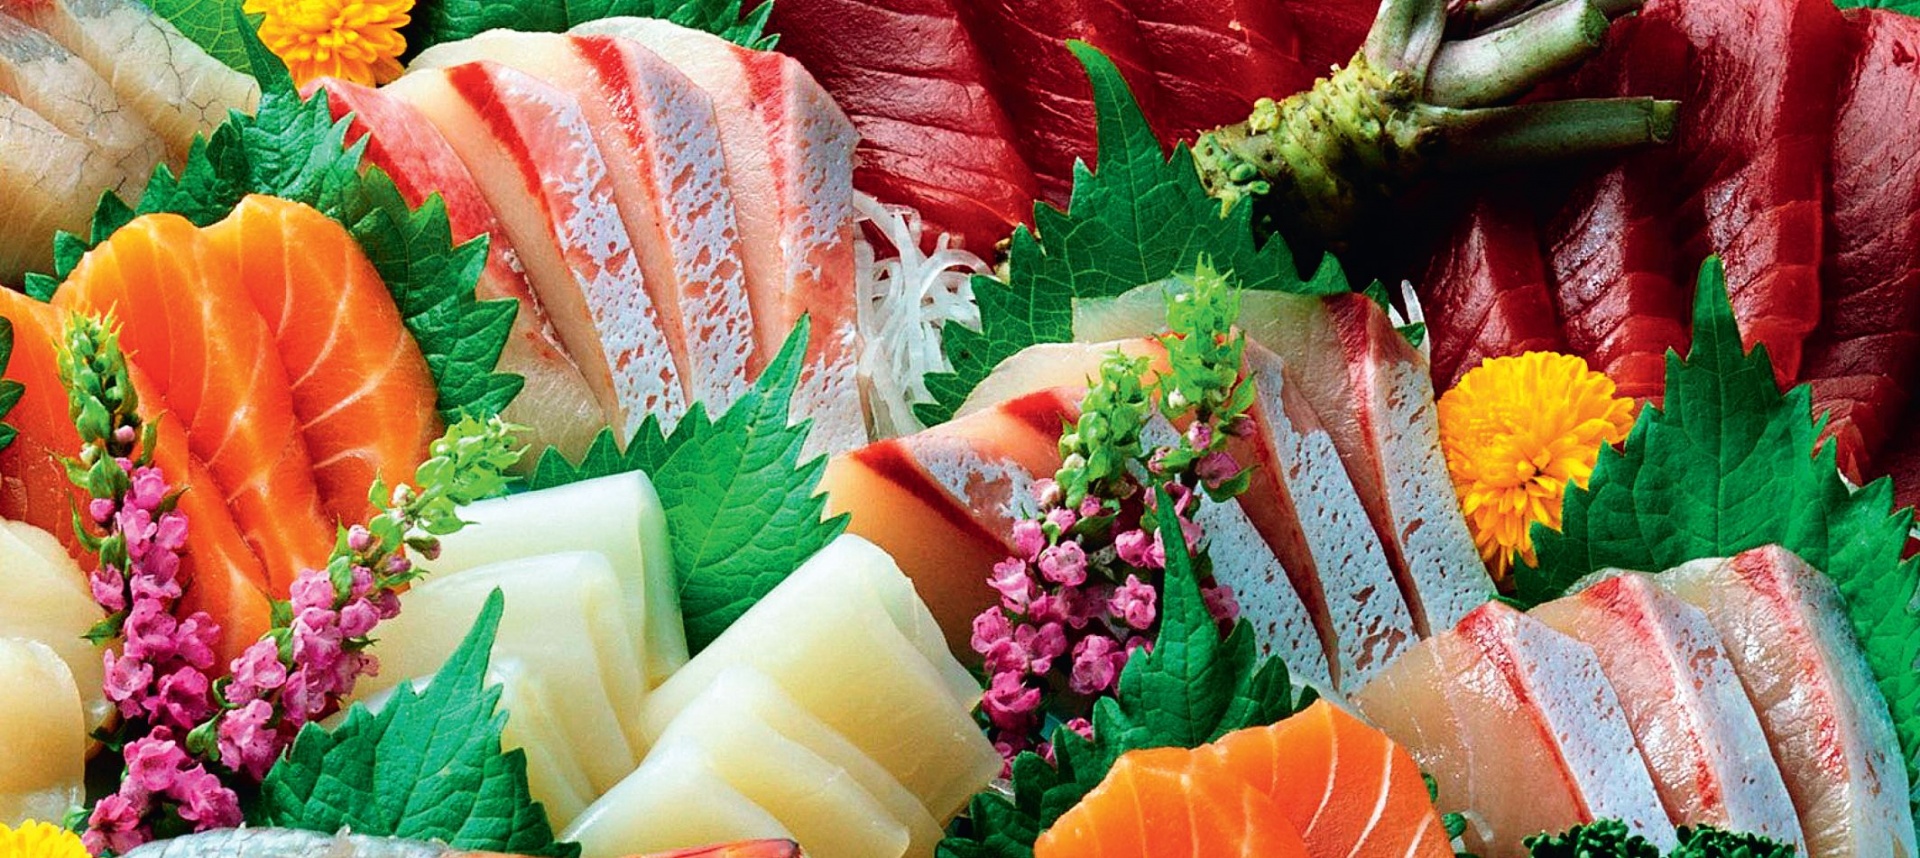 Хироаки Сато: «В пищевой промышленности передовые технологии обработки позволяют на 100% извлечь вкус продуктов»